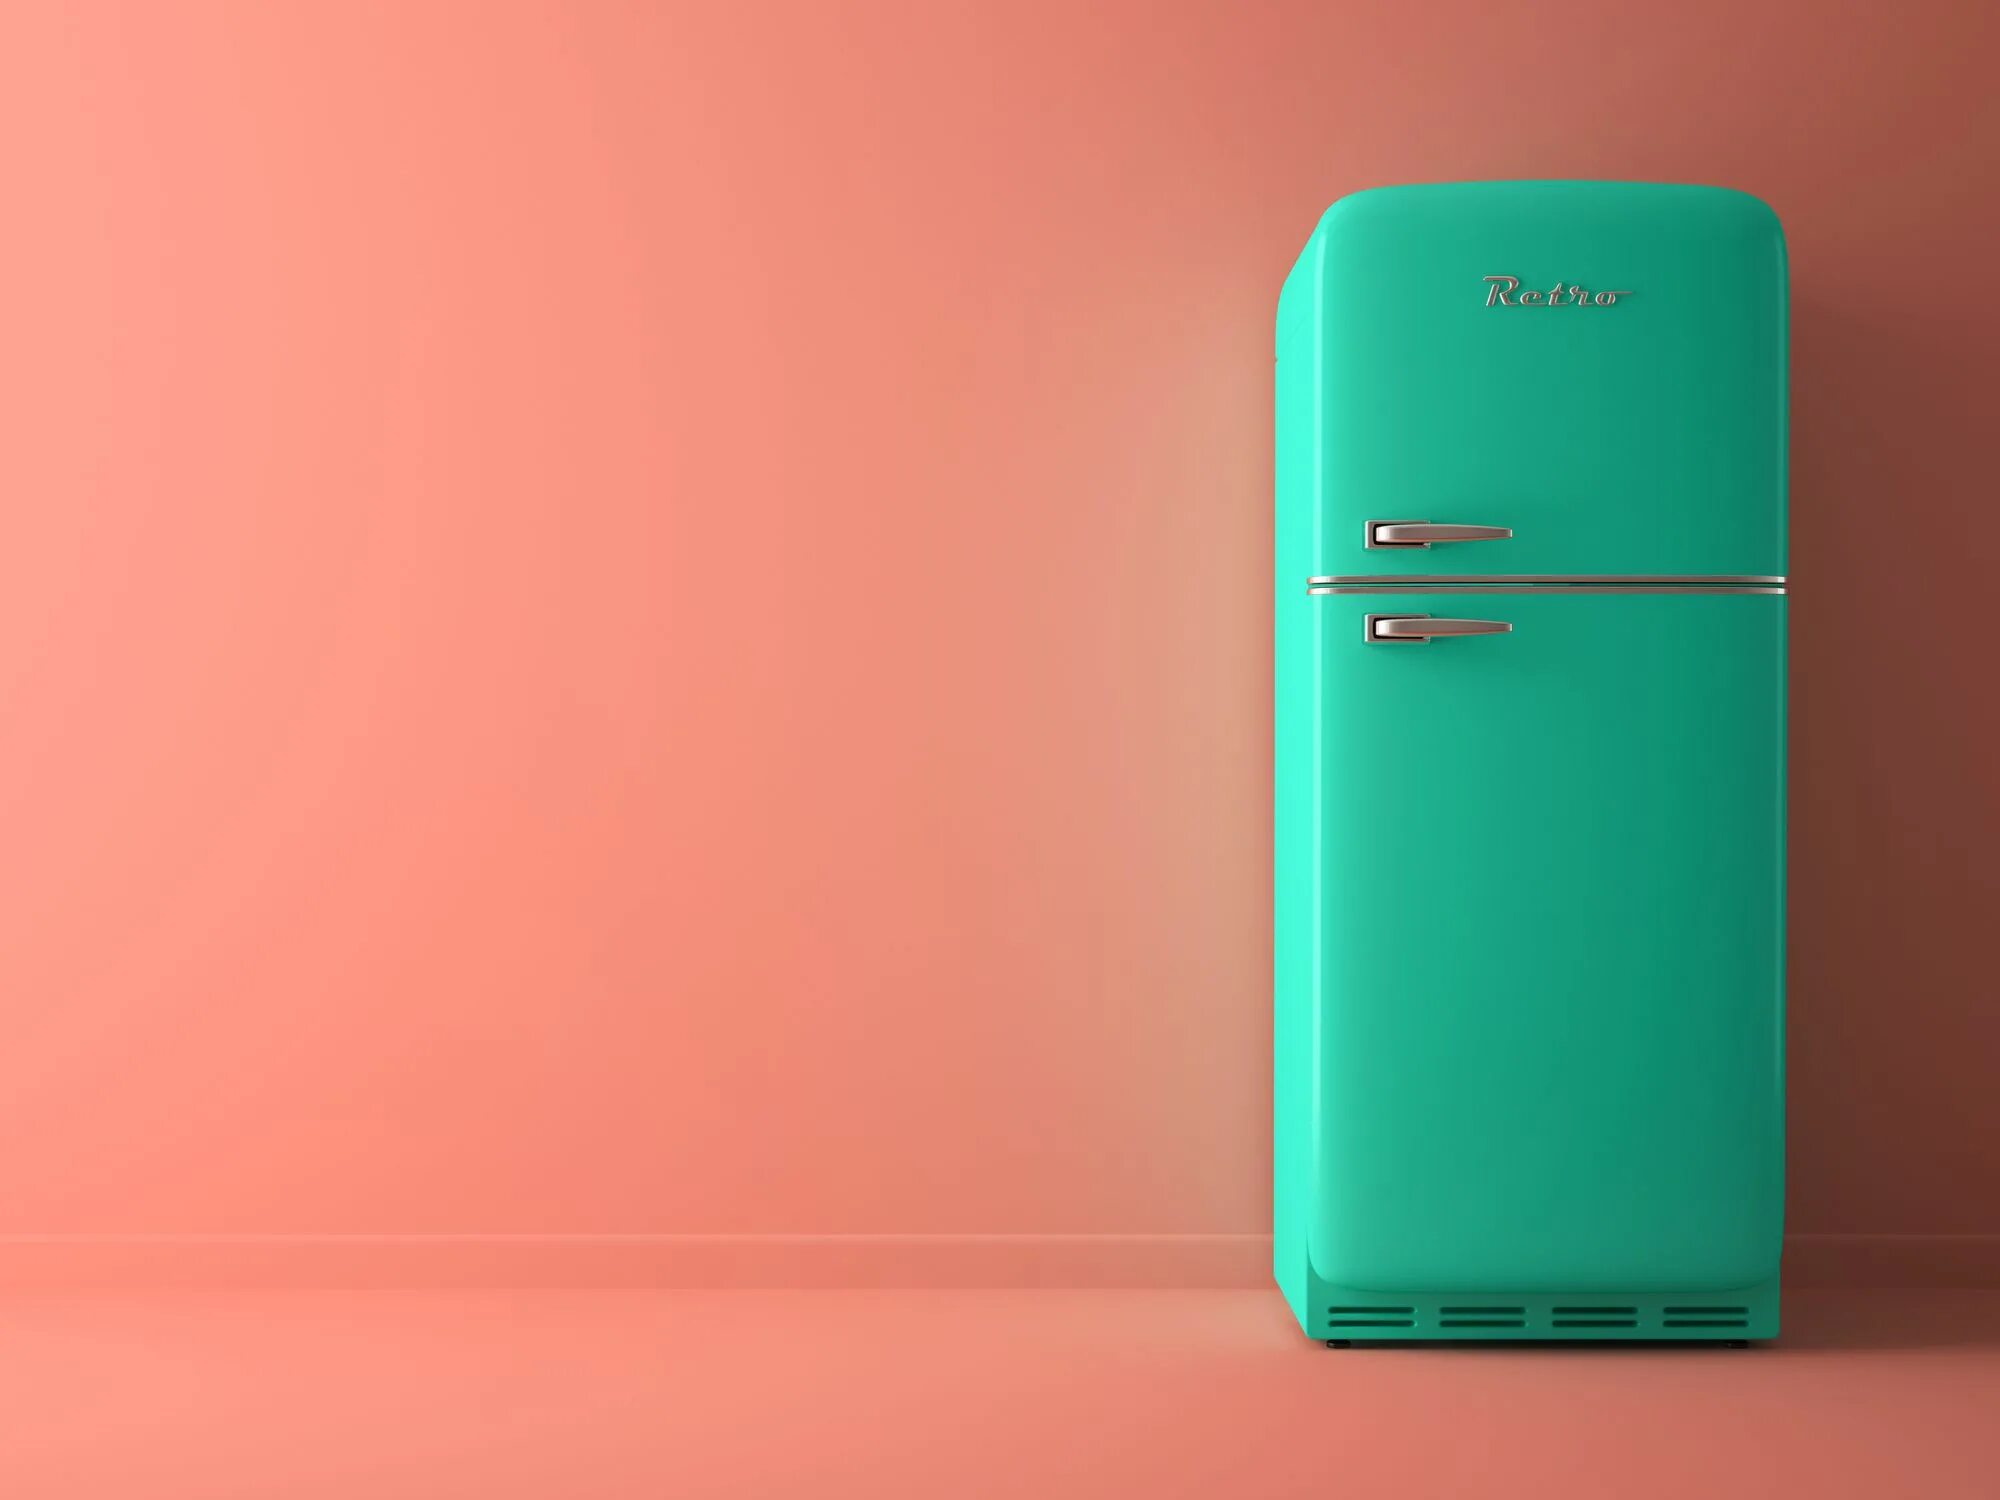 Холодильник это. Интересные холодильники. Холодильник цвета Тиффани. Холодильник на ярком фоне. Холодильник на голубом фоне.